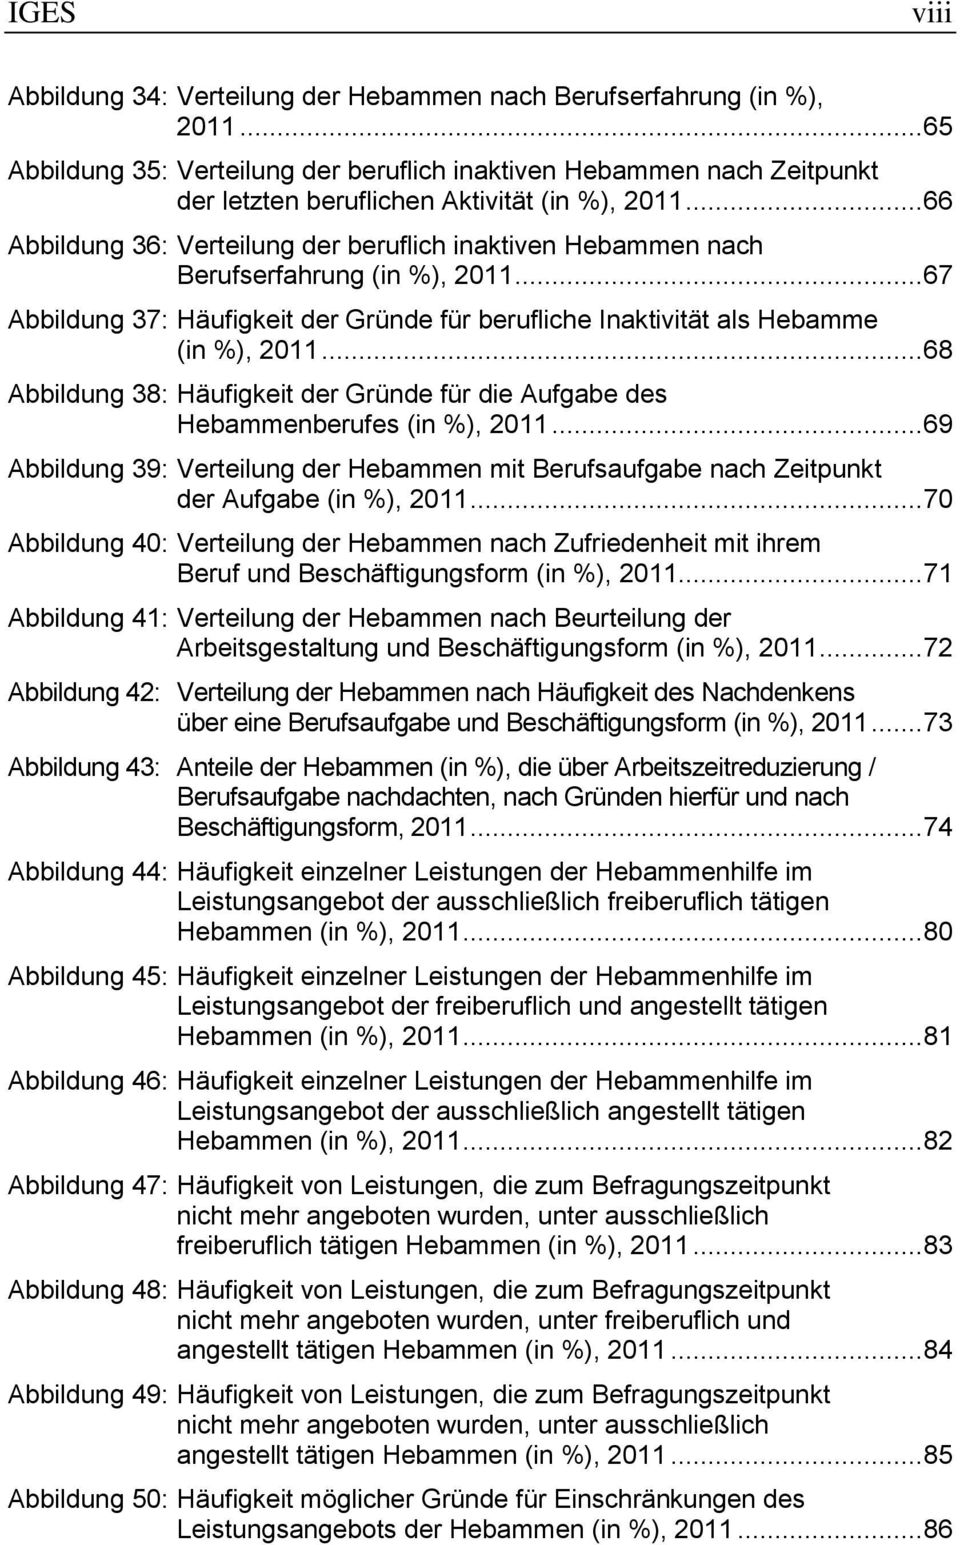 .. 66 Abbildung 36: Verteilung der beruflich inaktiven Hebammen nach Berufserfahrung (in %), 2011... 67 Abbildung 37: Häufigkeit der Gründe für berufliche Inaktivität als Hebamme (in %), 2011.